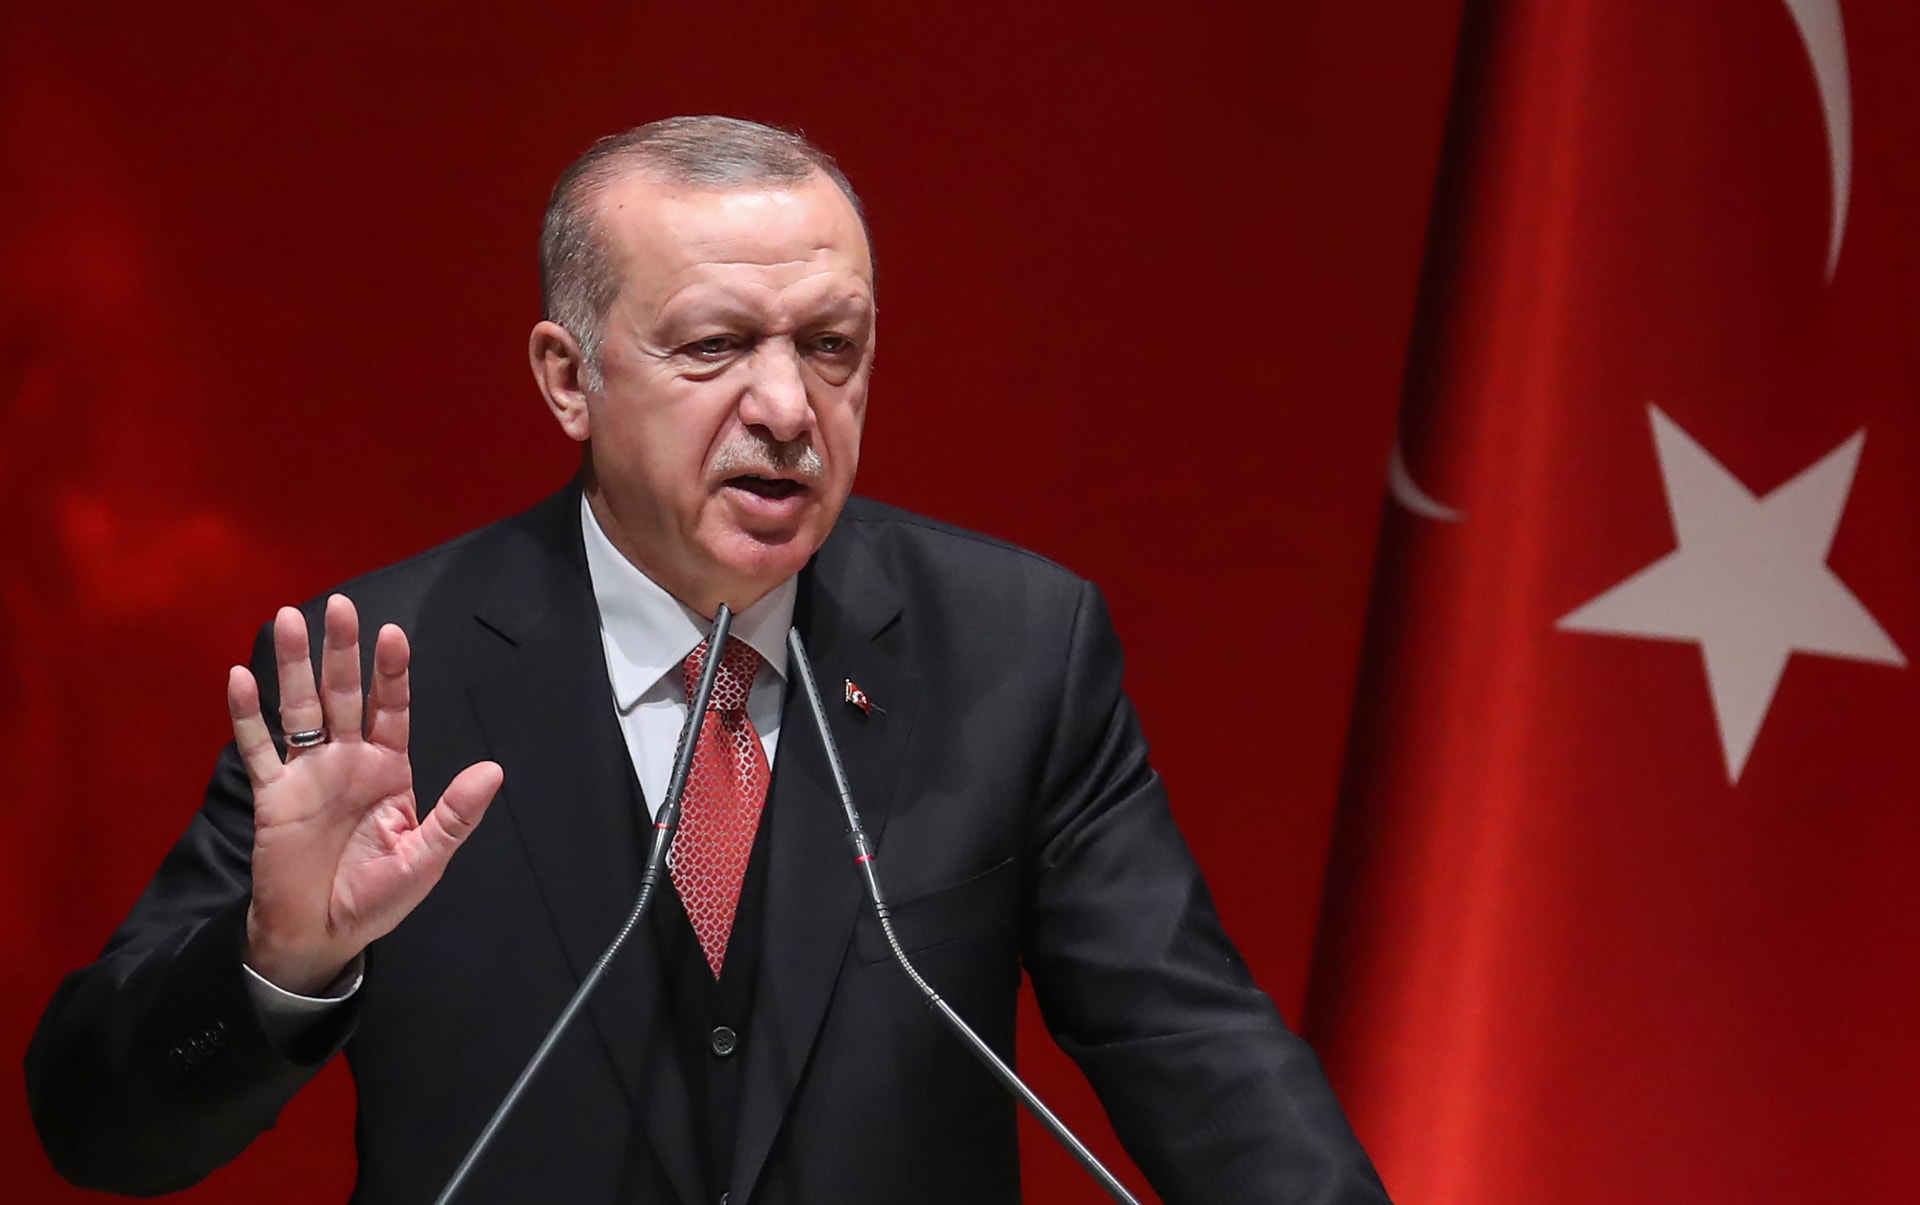 أردوغان يوجه أصابع الاتهام للمعارضة التركية في حادثة السوبر التركي وقال لهم :"لن تحصلوا على أي خبز من الرياض"